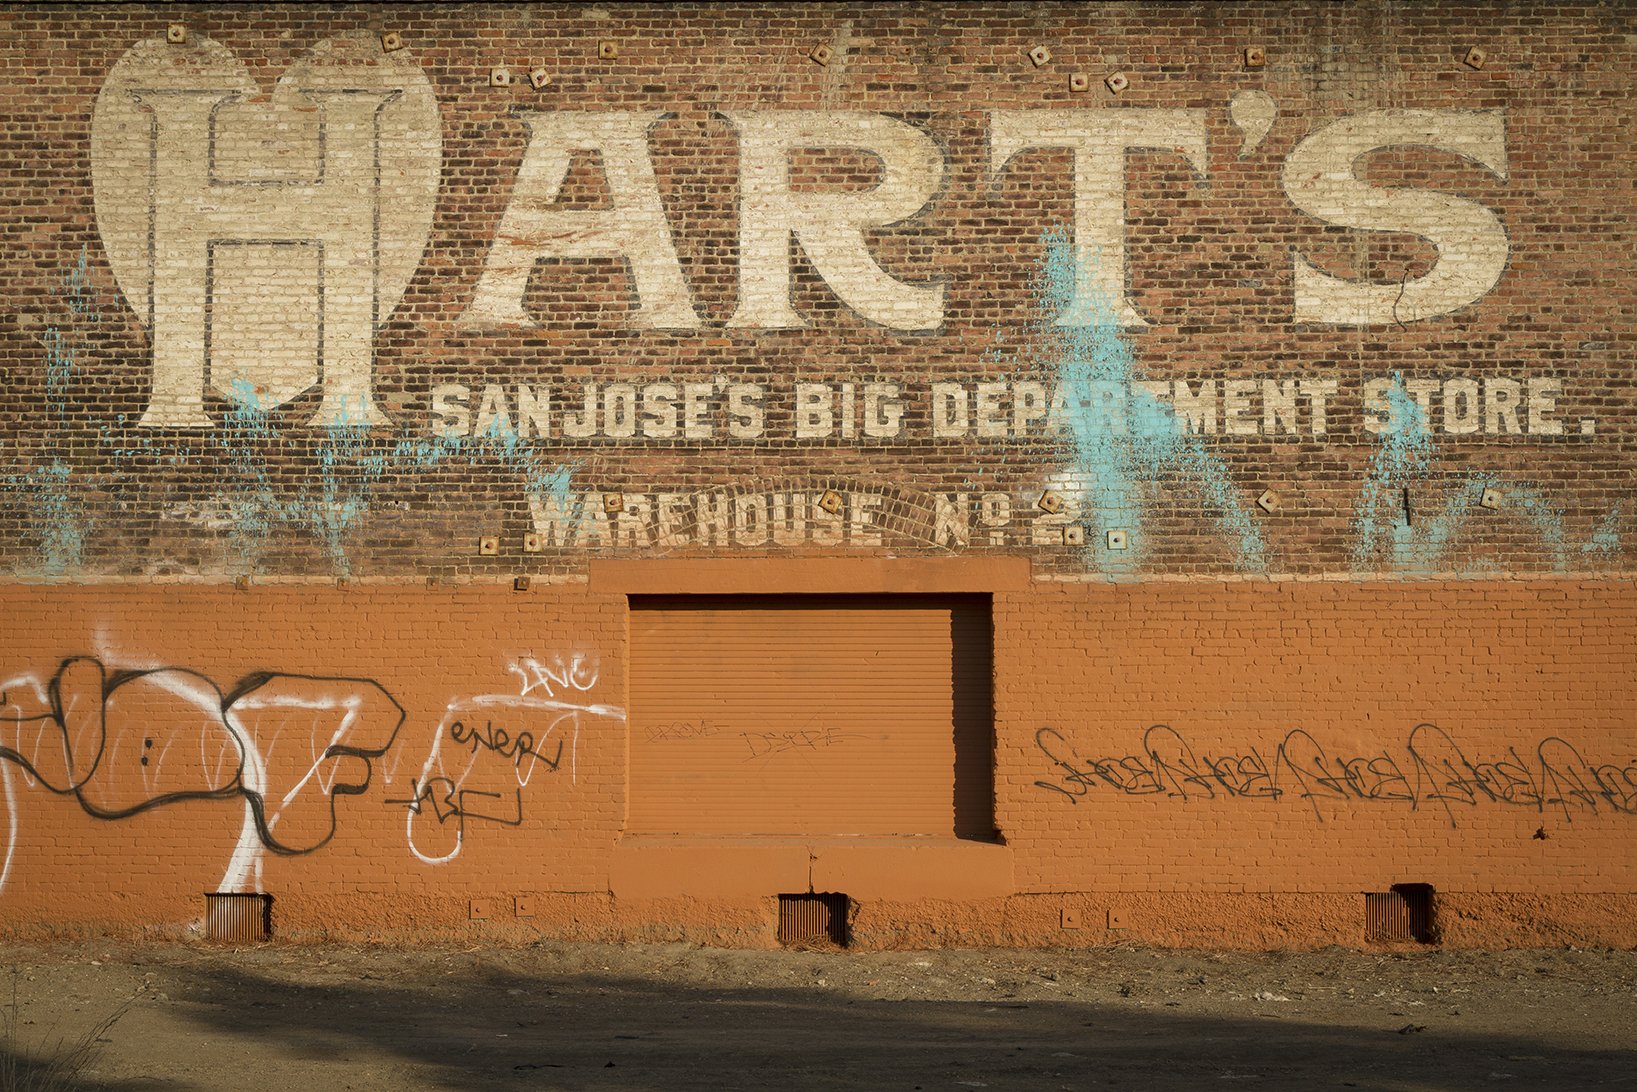  Heartless. San Jose, CA 2012 